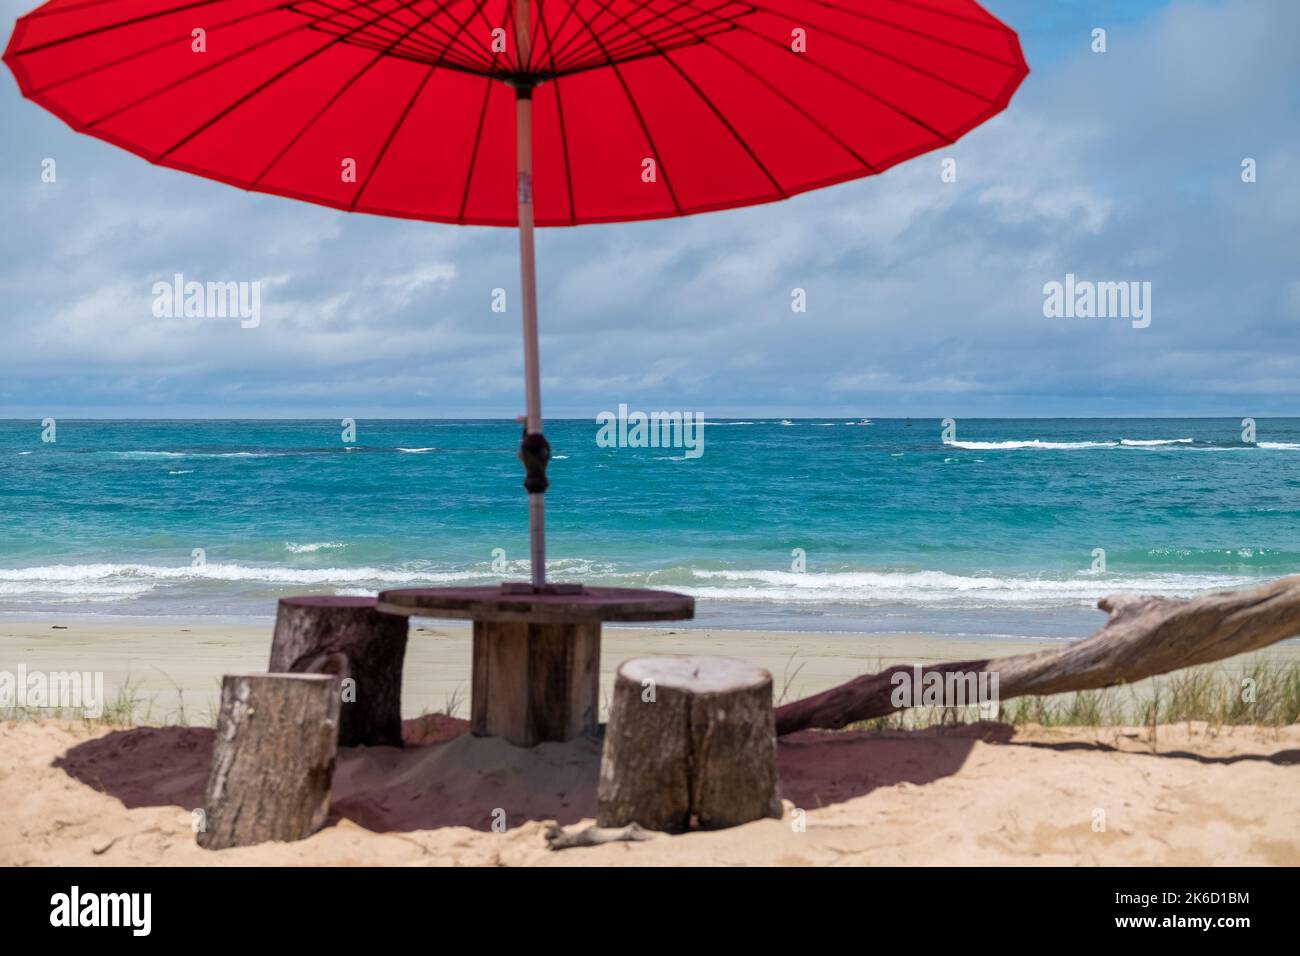 Schöner Strand mit türkisfarbenem Meer, mit einem roten Sonnenschirm und einer Bank im Vordergrund. Idilische Landschaft für den perfekten Urlaub. Stockfoto